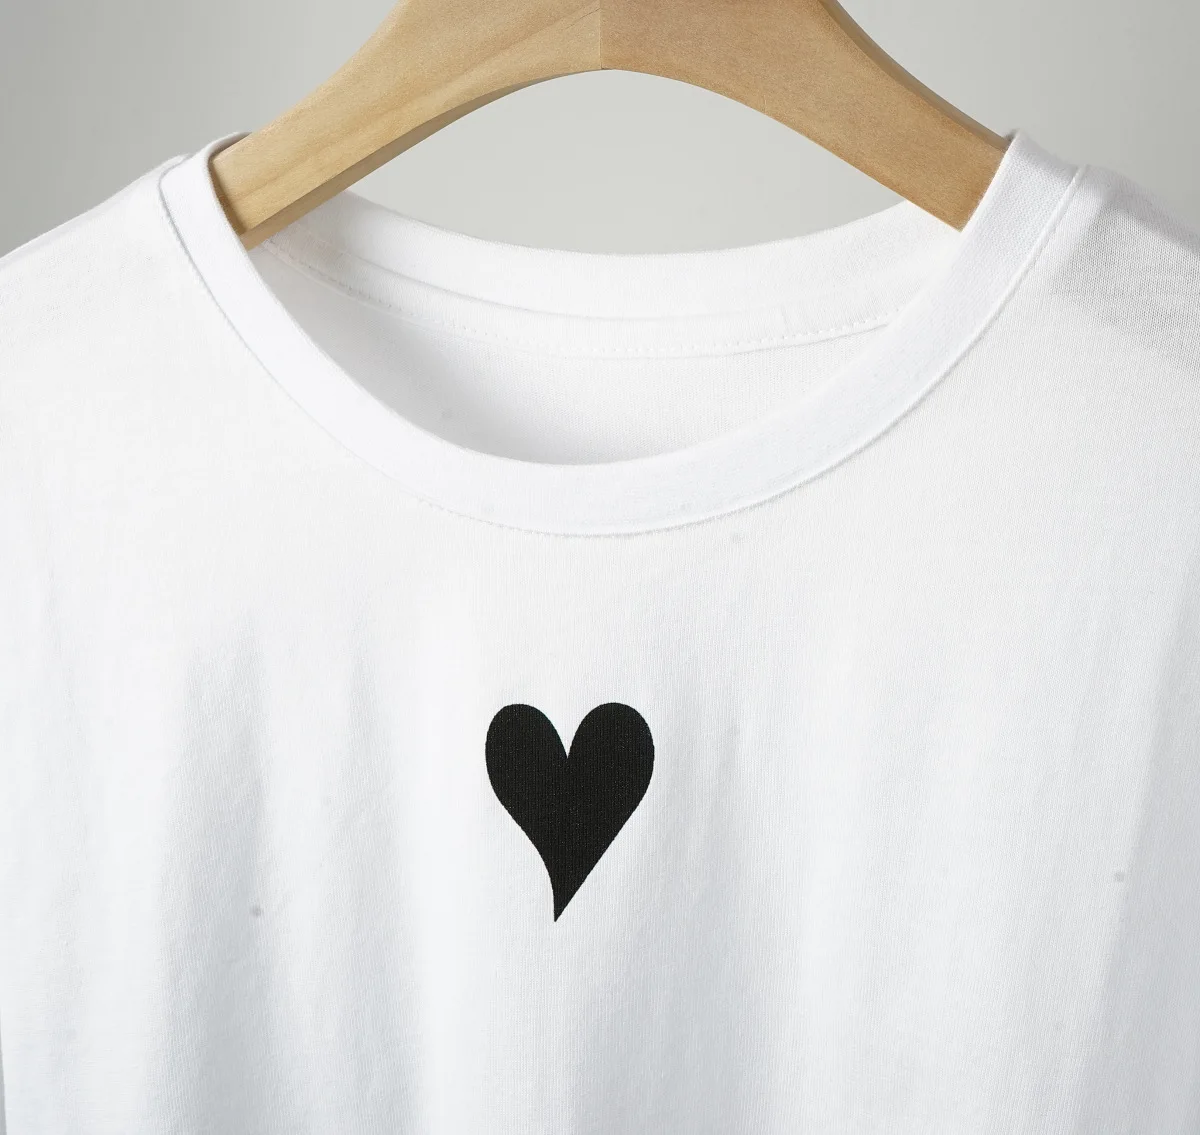 2021 De La Primavera Verano De La Mujer T-Camisa De Señora O-Cuello Suelto Amor Impresión Del Patrón De Manga Corta Camiseta Blanca Superior 0